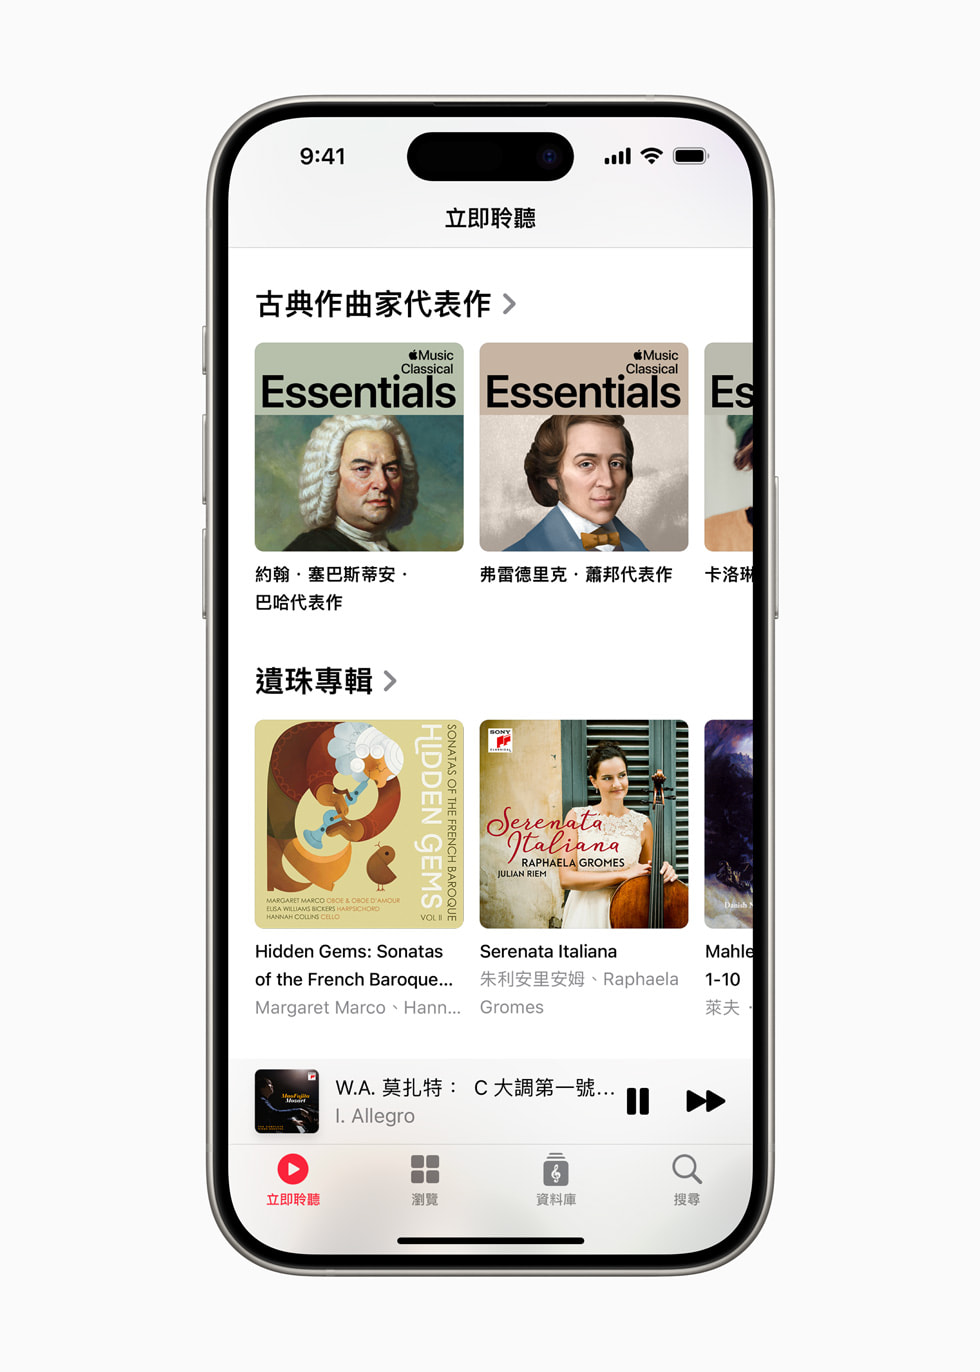 「Apple Music 古典樂」中的播放列表和專輯顯示於 iPhone 15 Pro 上。